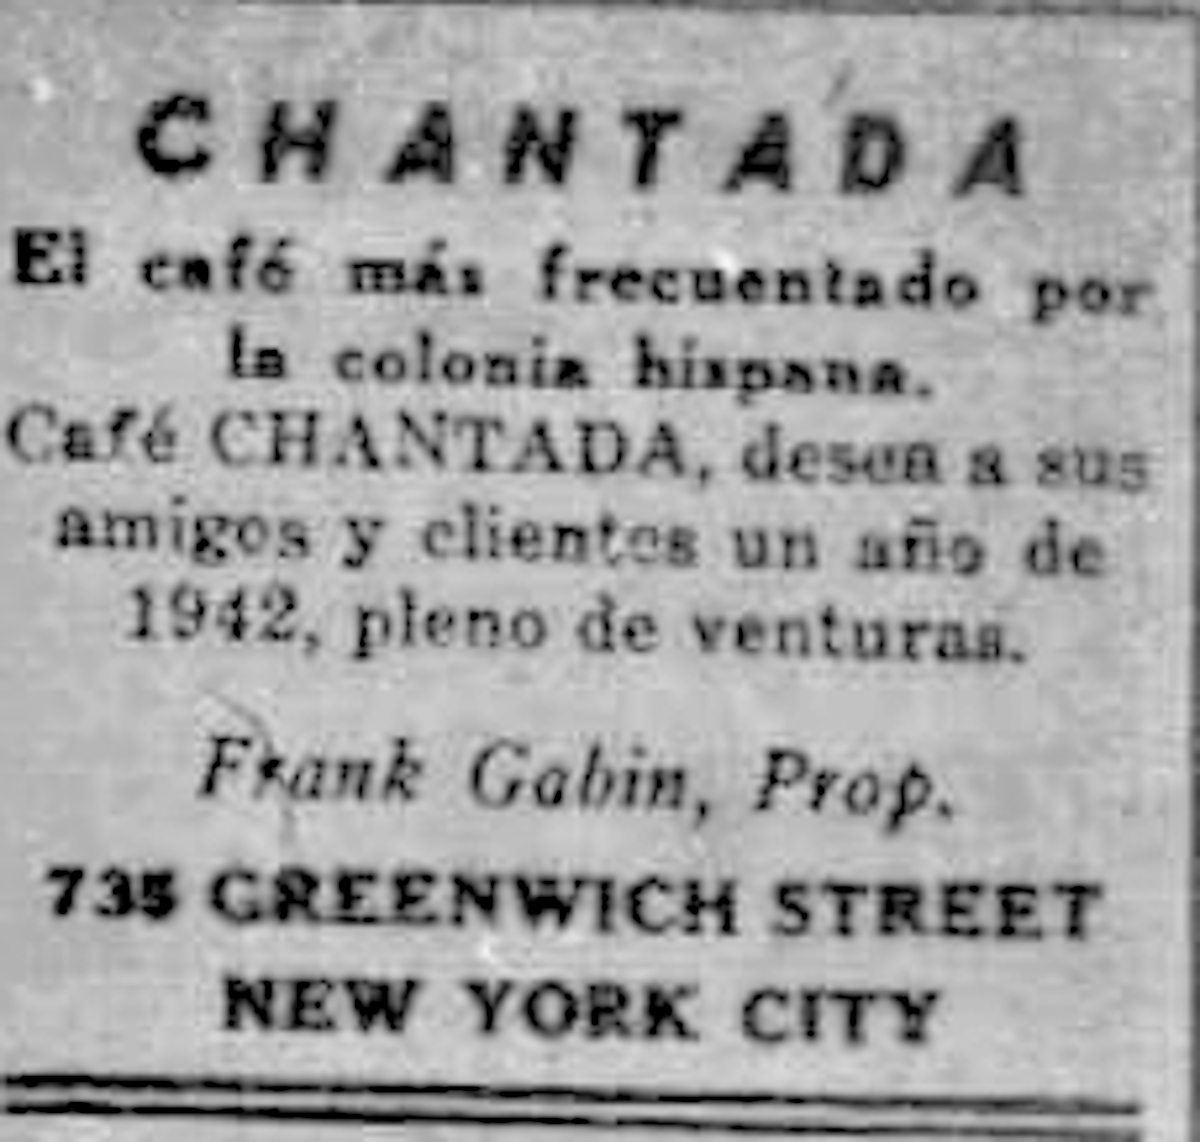 Café Chantada > 735 Greenwich St, New York │ Anos 40 (España Libre, Arquivo da Emigración Galega)